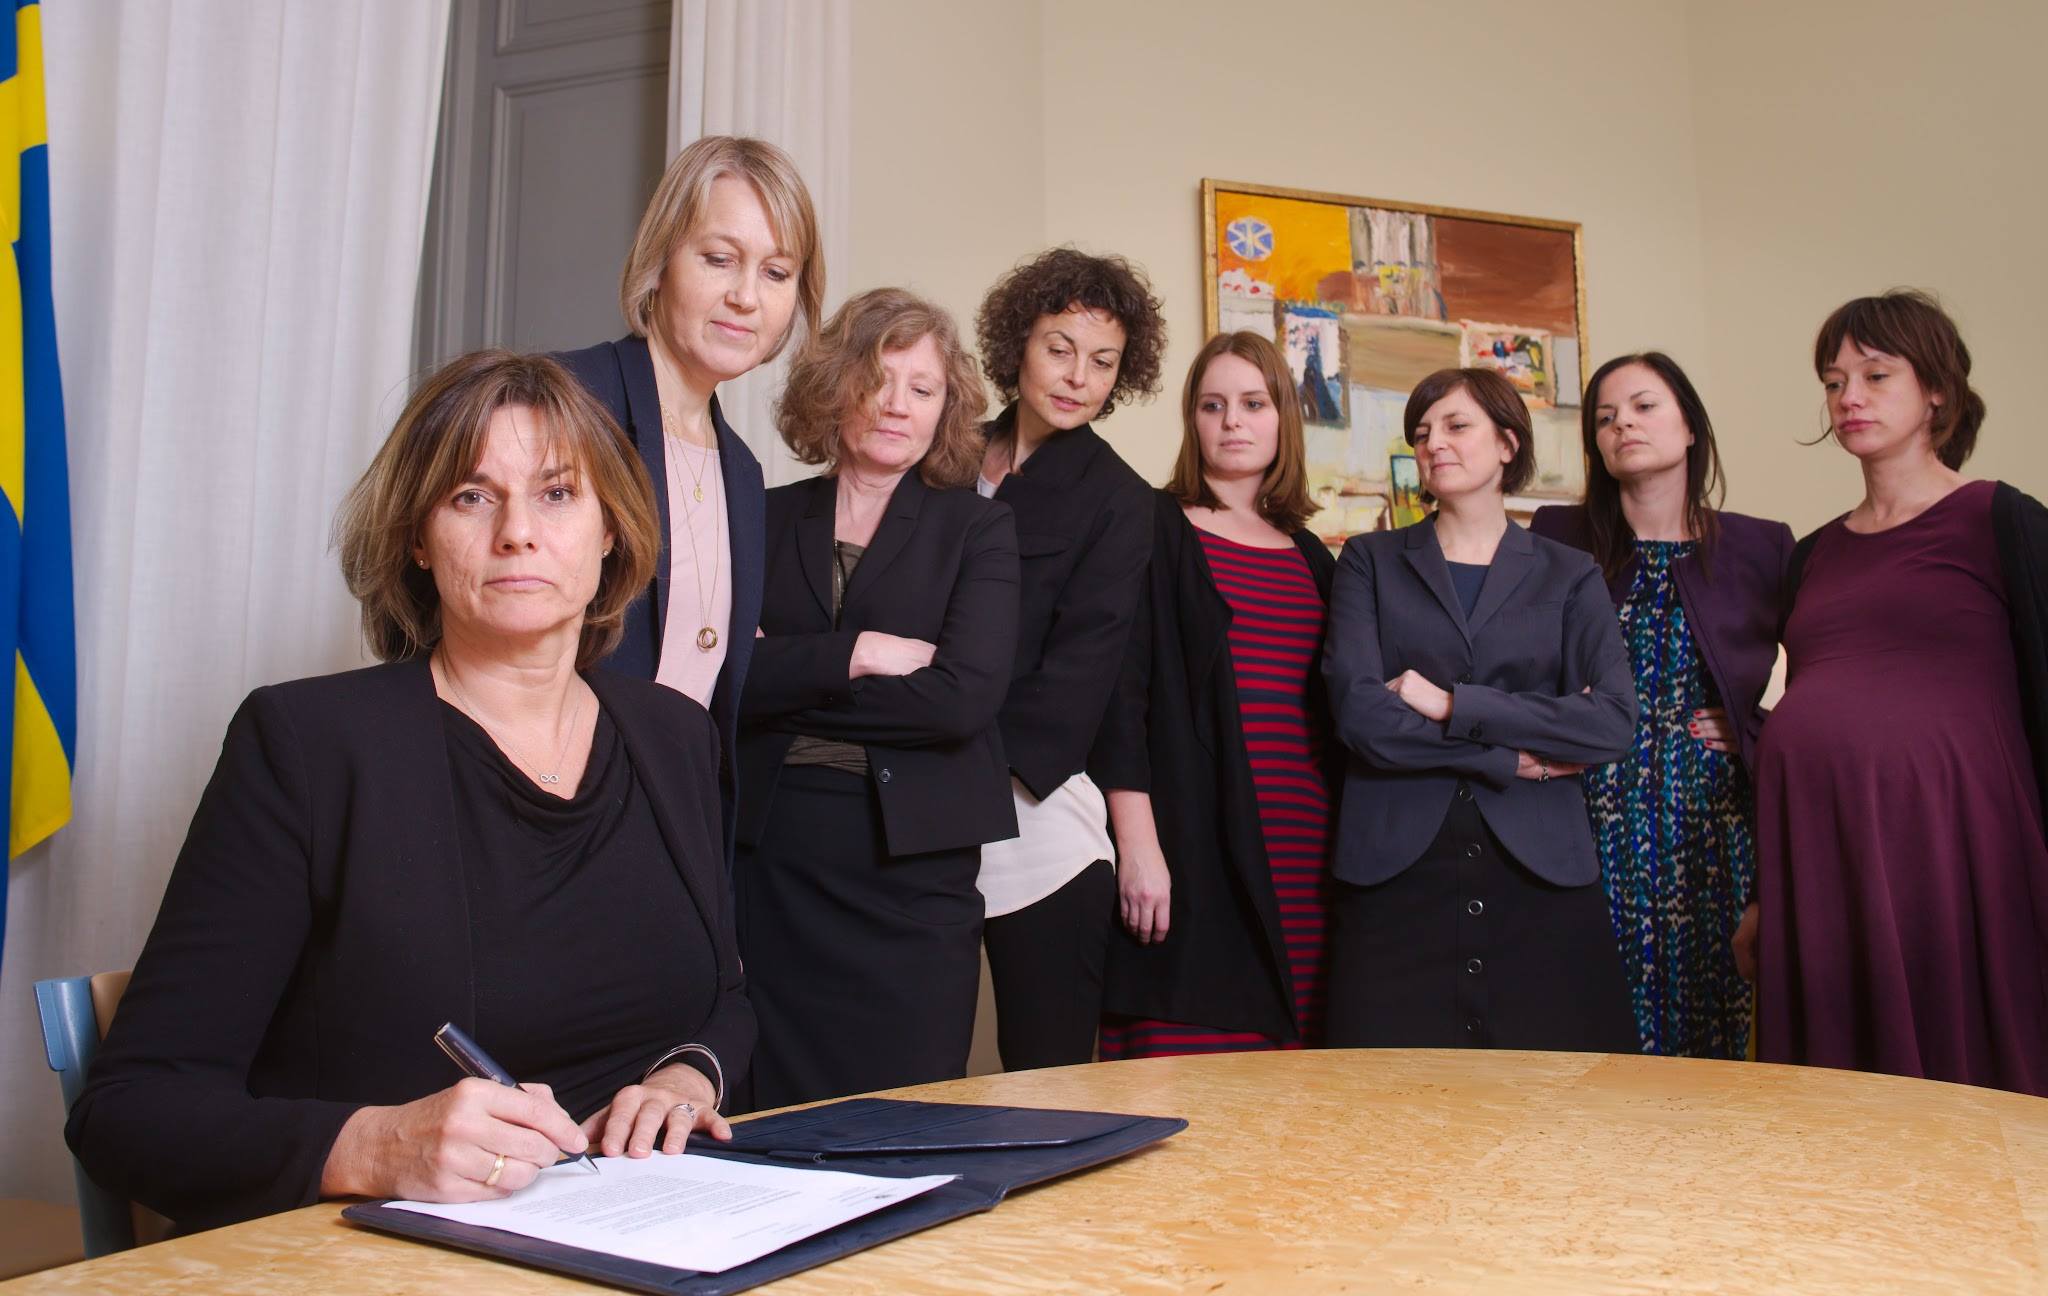 A svéd környezetvédelmi miniszter csupanő aláírós képpel válaszolt Trump csupaférfi aláírására